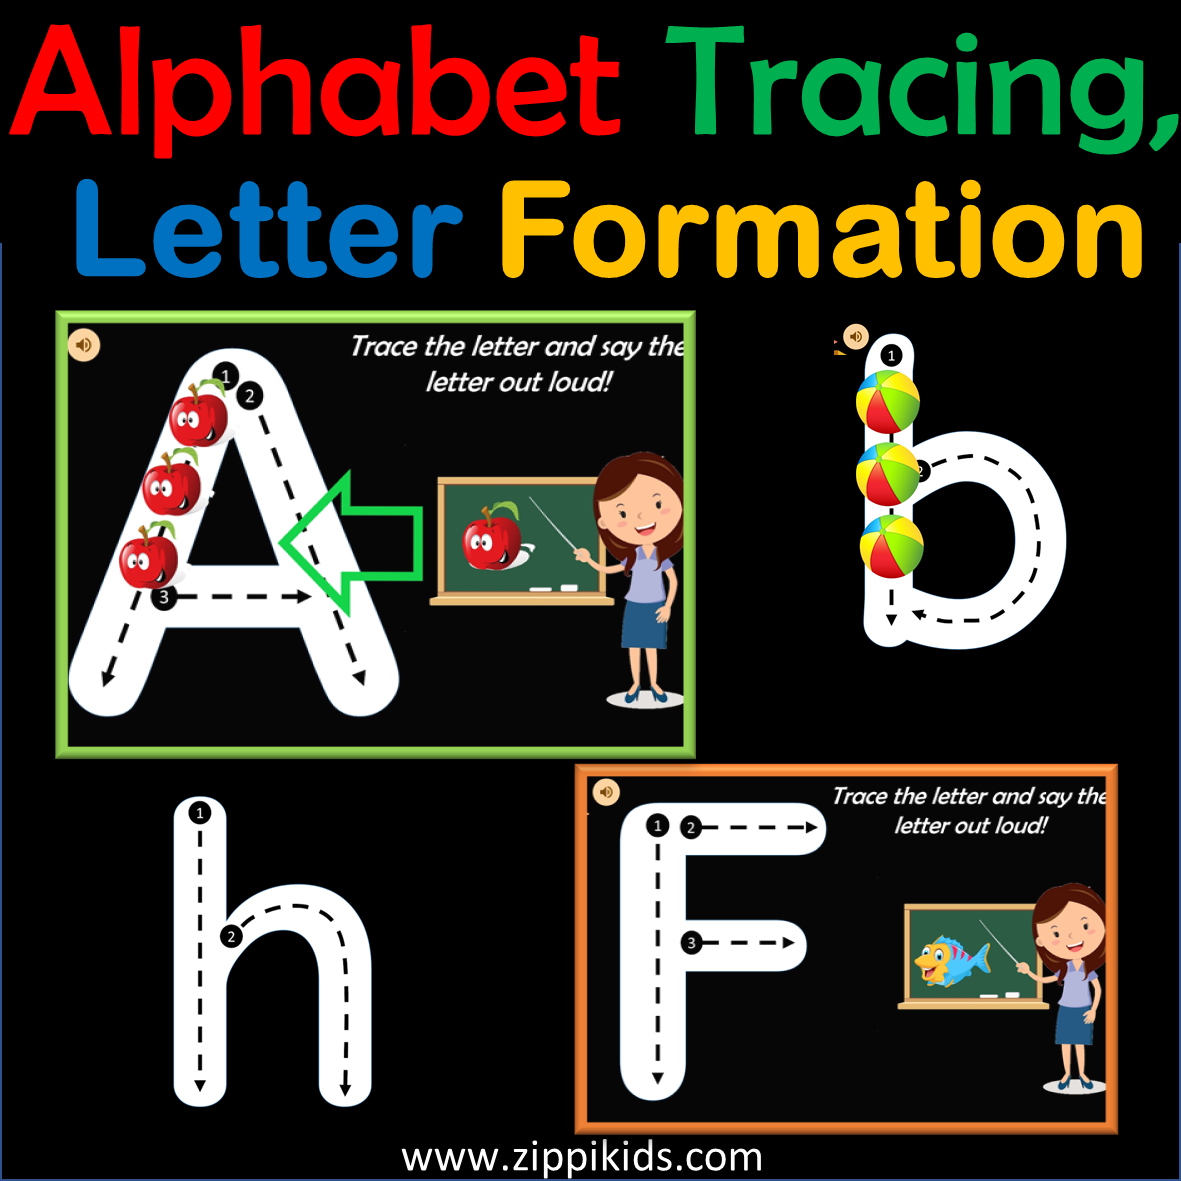 Alphabet Tracing, Letter Formation - 52 Google Slides